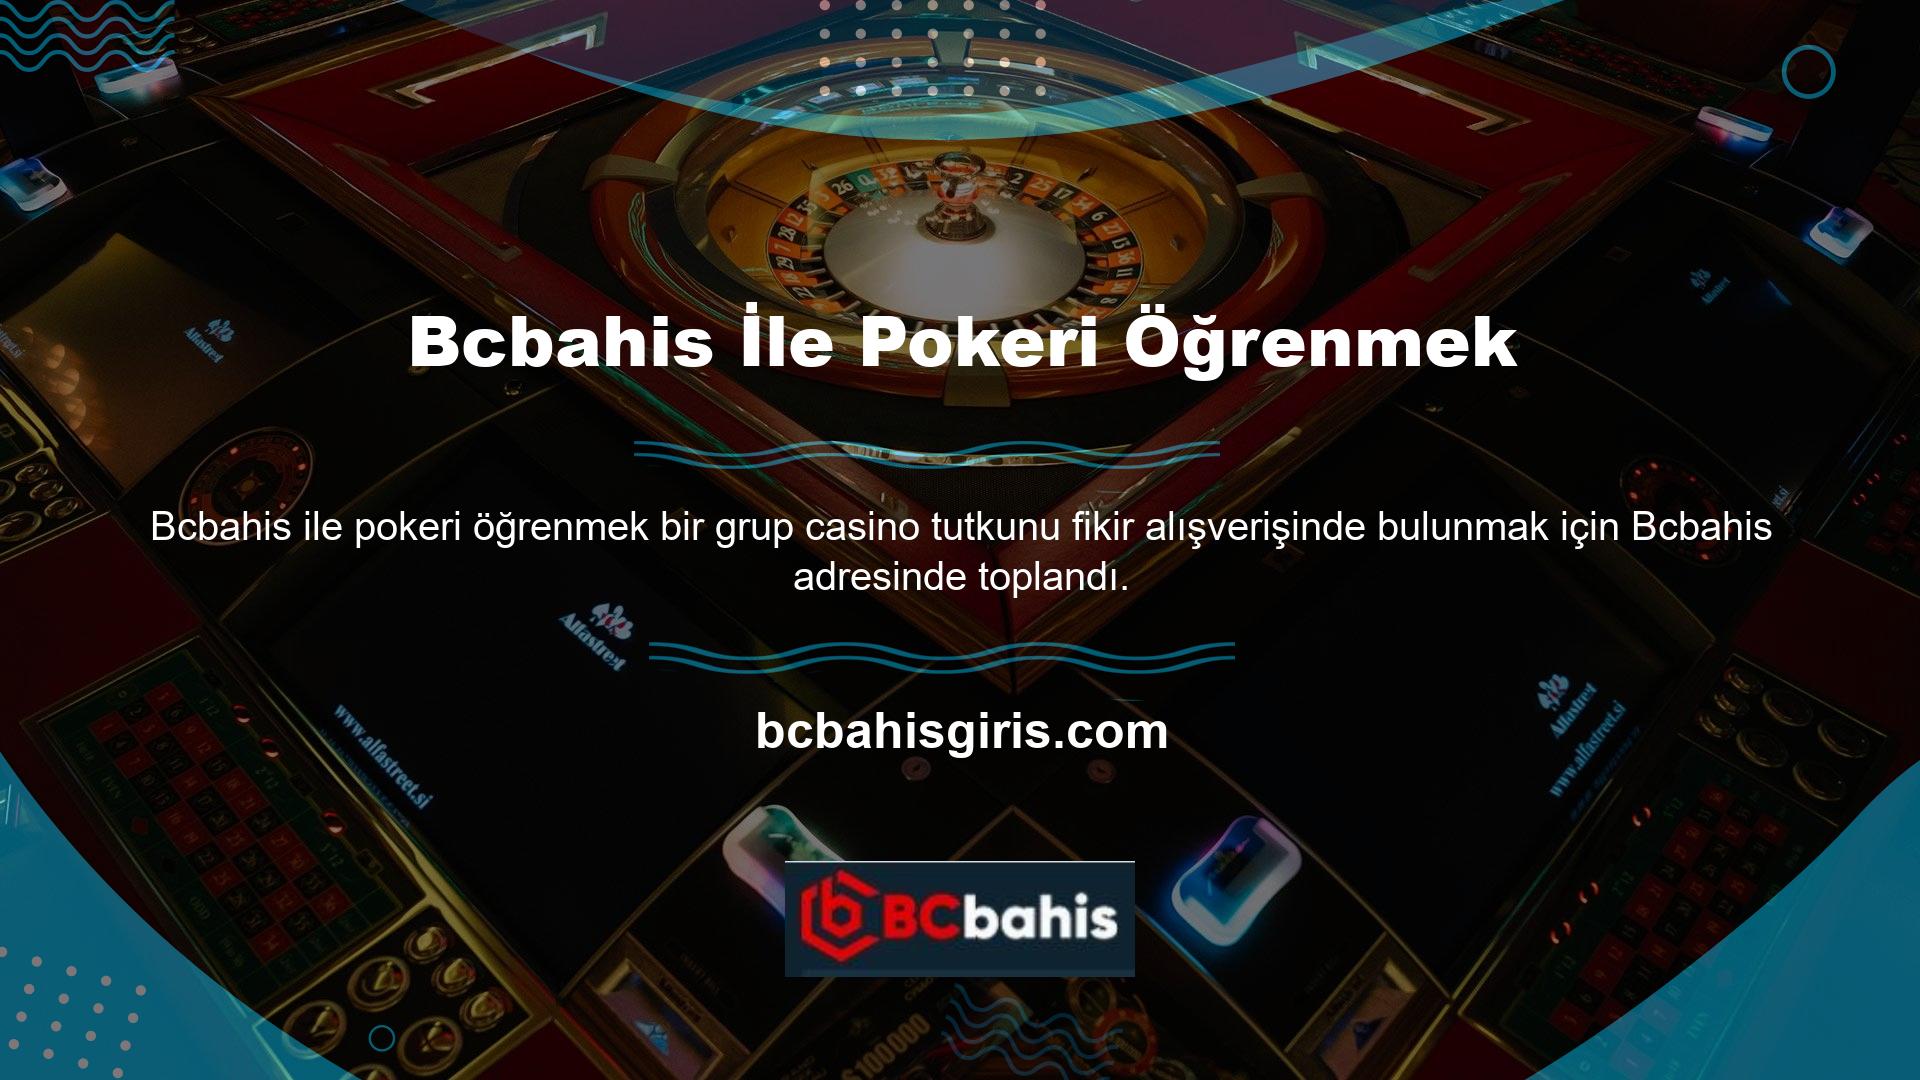 Casino meraklıları, özellikle Bcbahis teklifler göz önüne alındığında, poker oyunları oynamanın kötü bir seçim olmadığını görebilirler